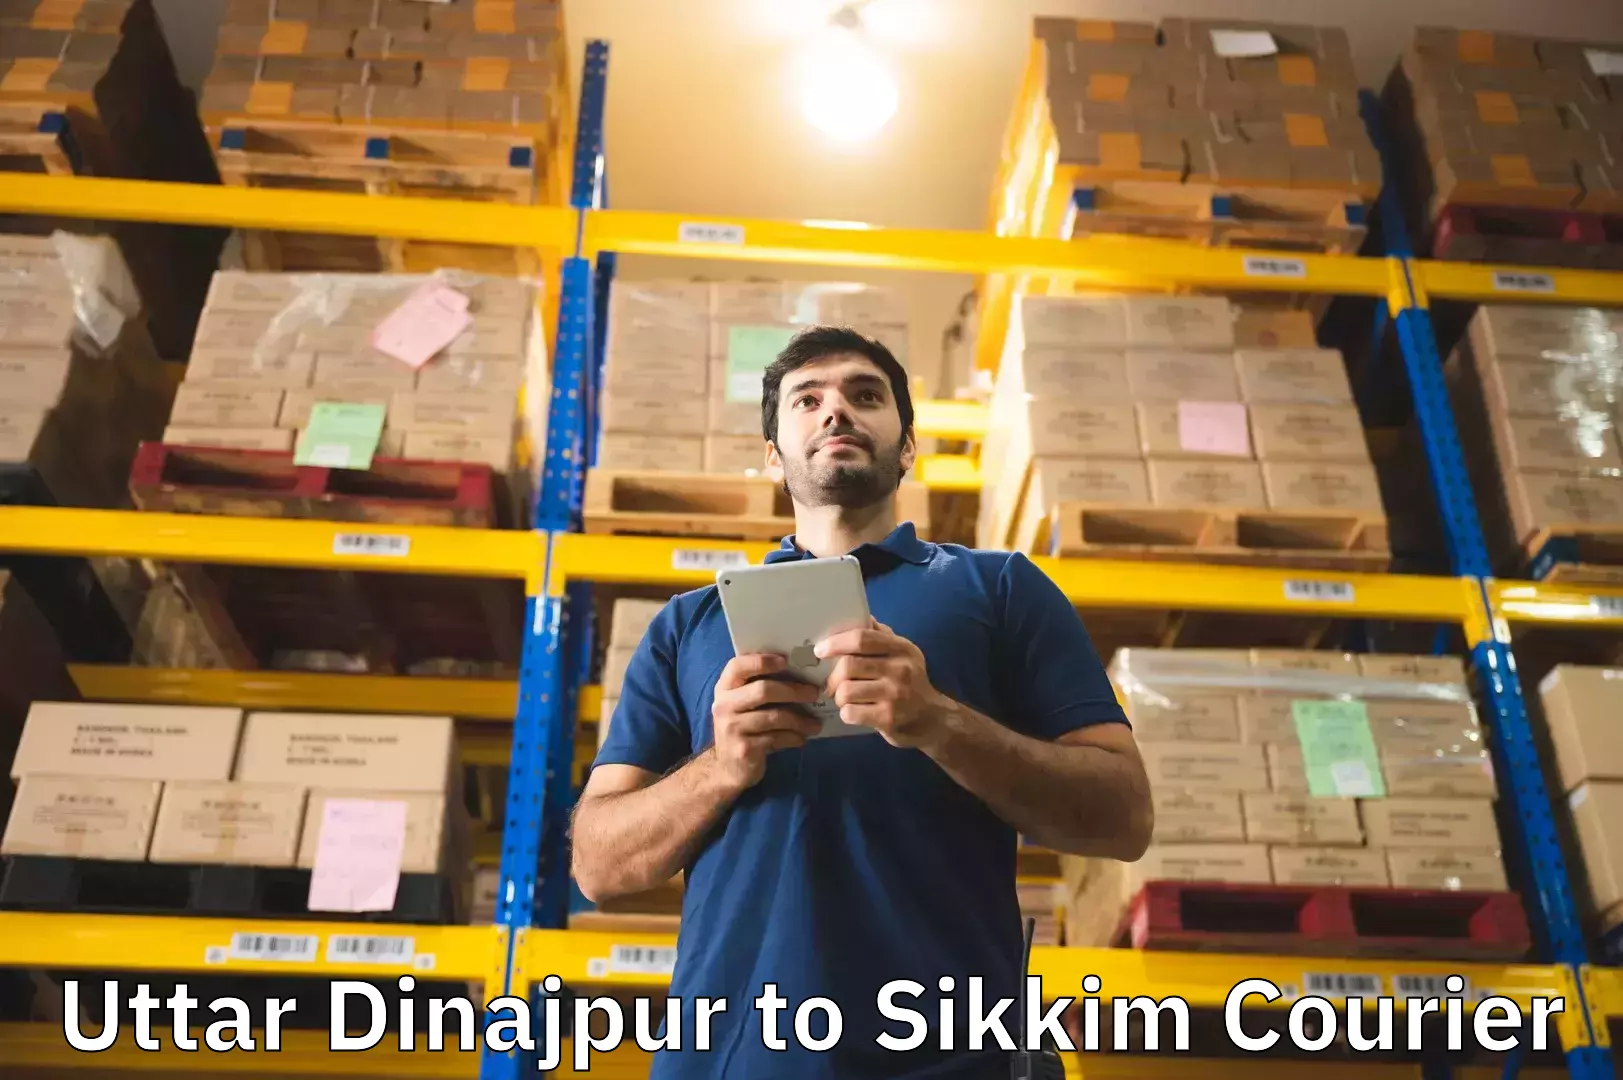 Baggage courier advice Uttar Dinajpur to Gangtok